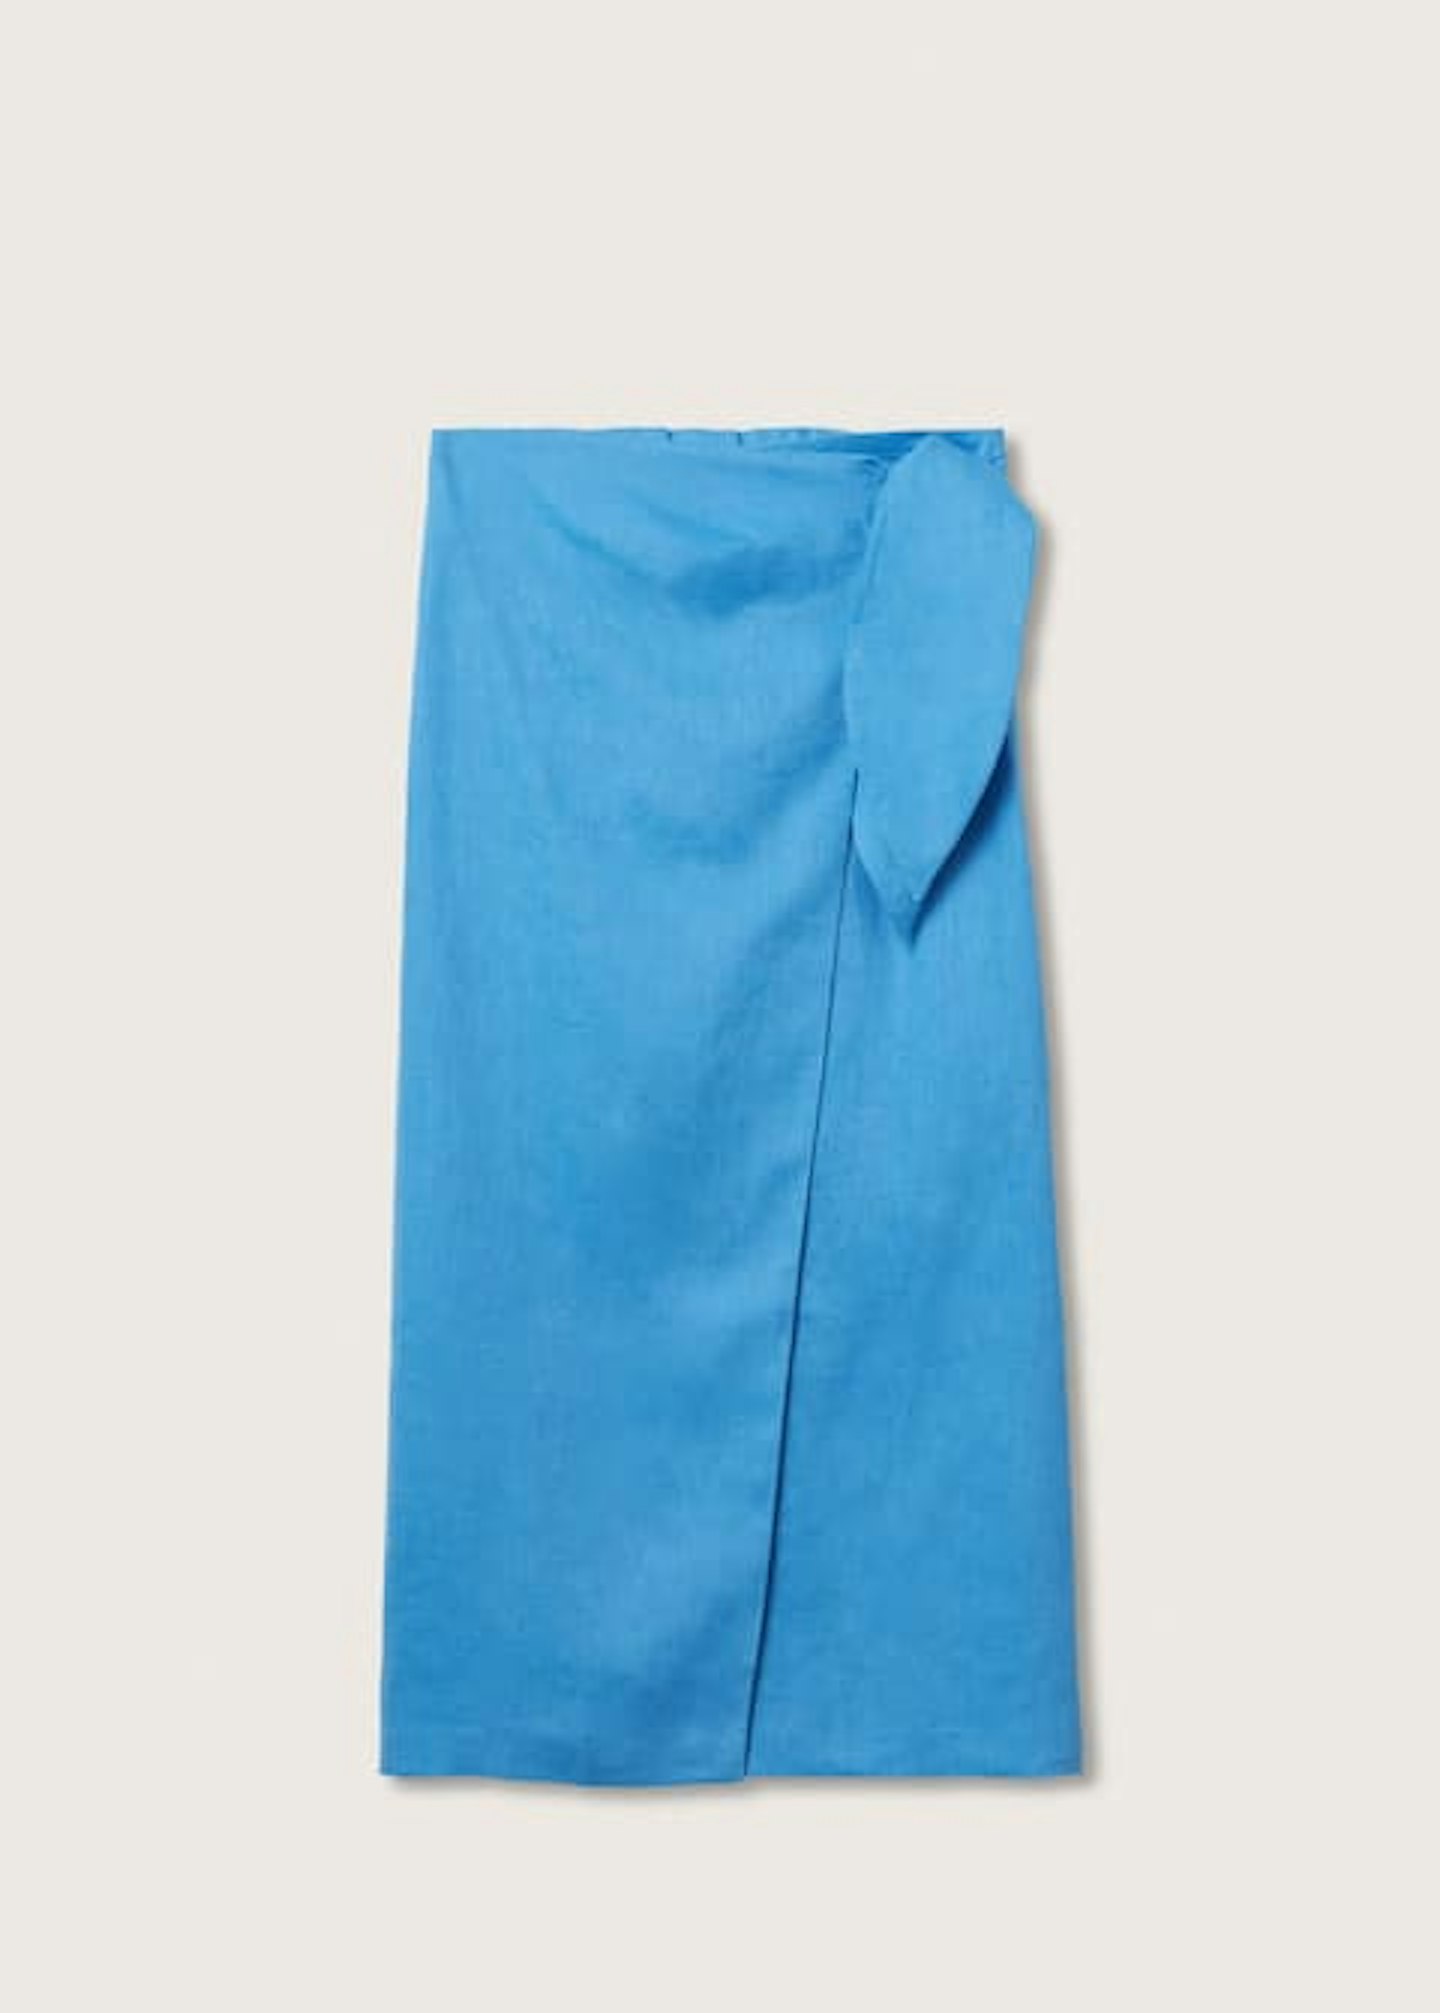 Mango, Linen-blend wrap skirt, £35.99